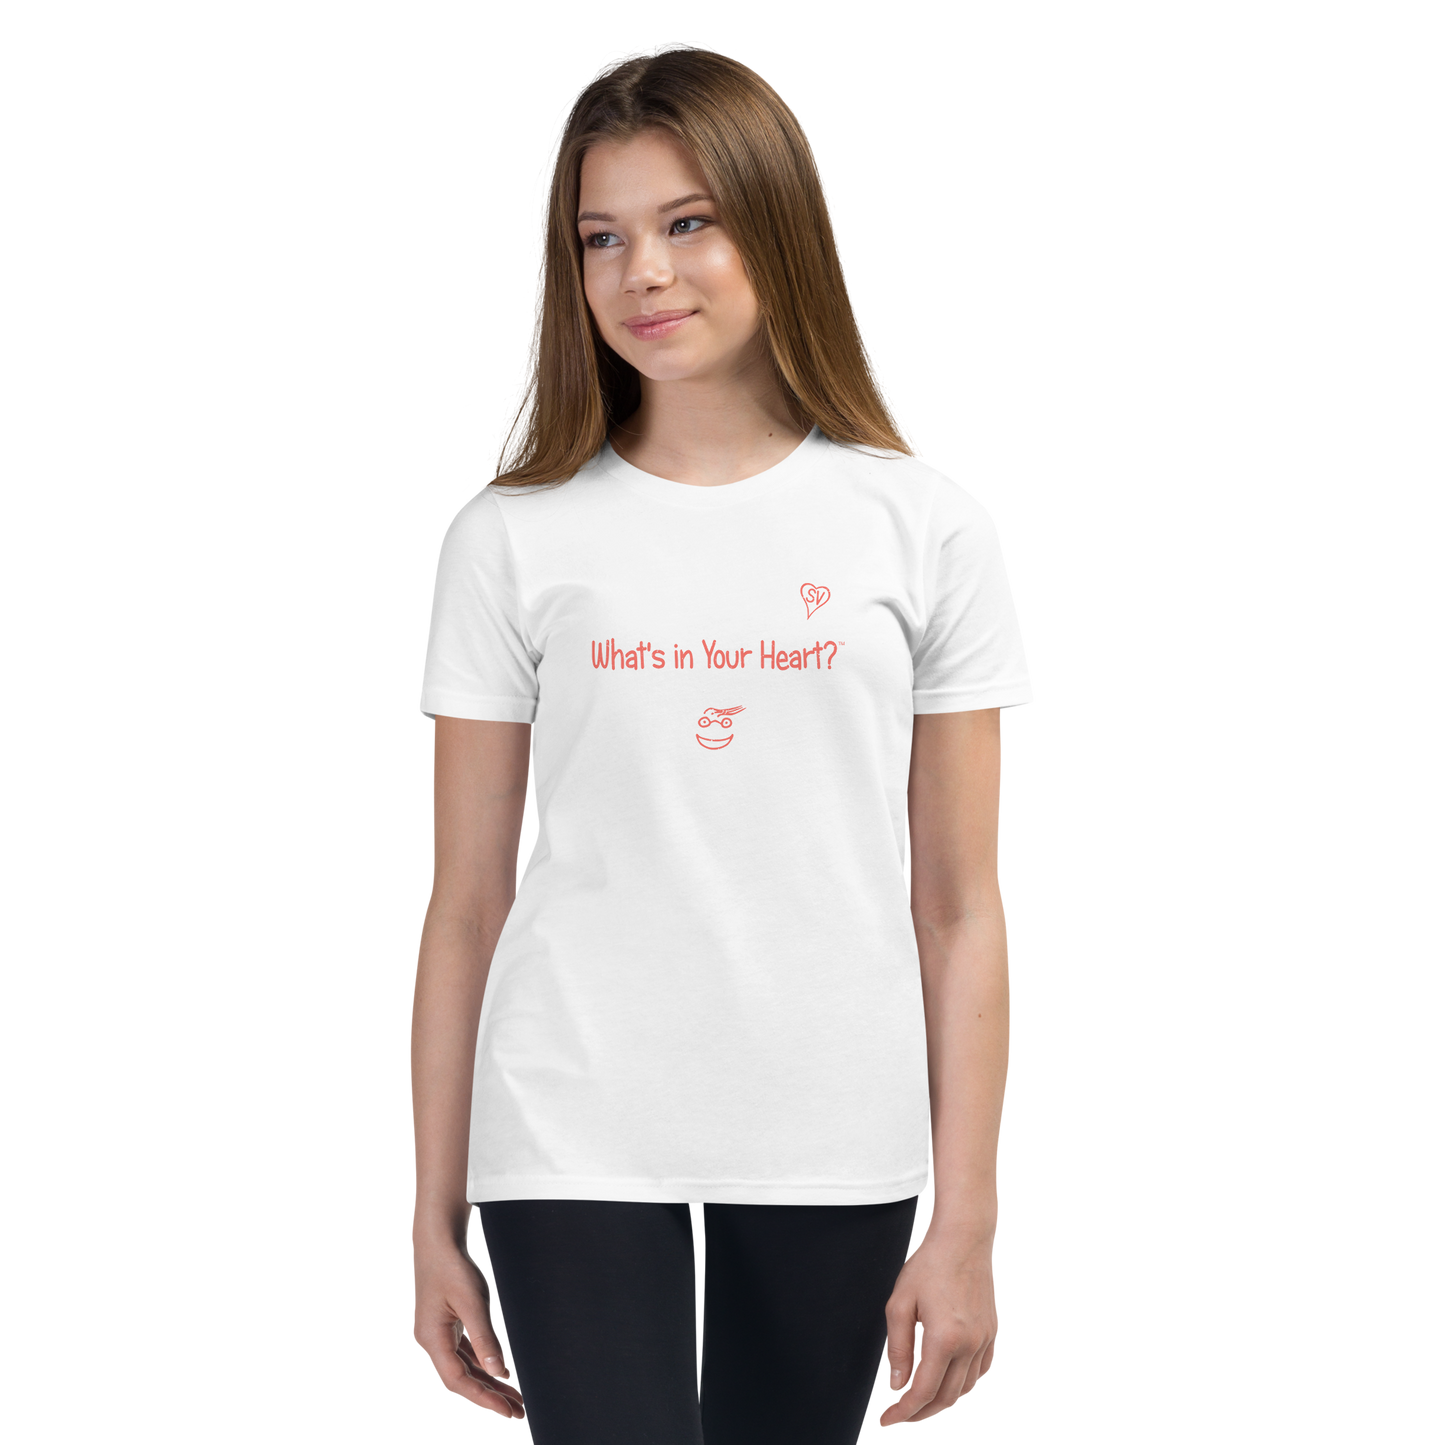 White "Heart Full of Virtues" Youth Unisex Short Sleeve T-Shirt